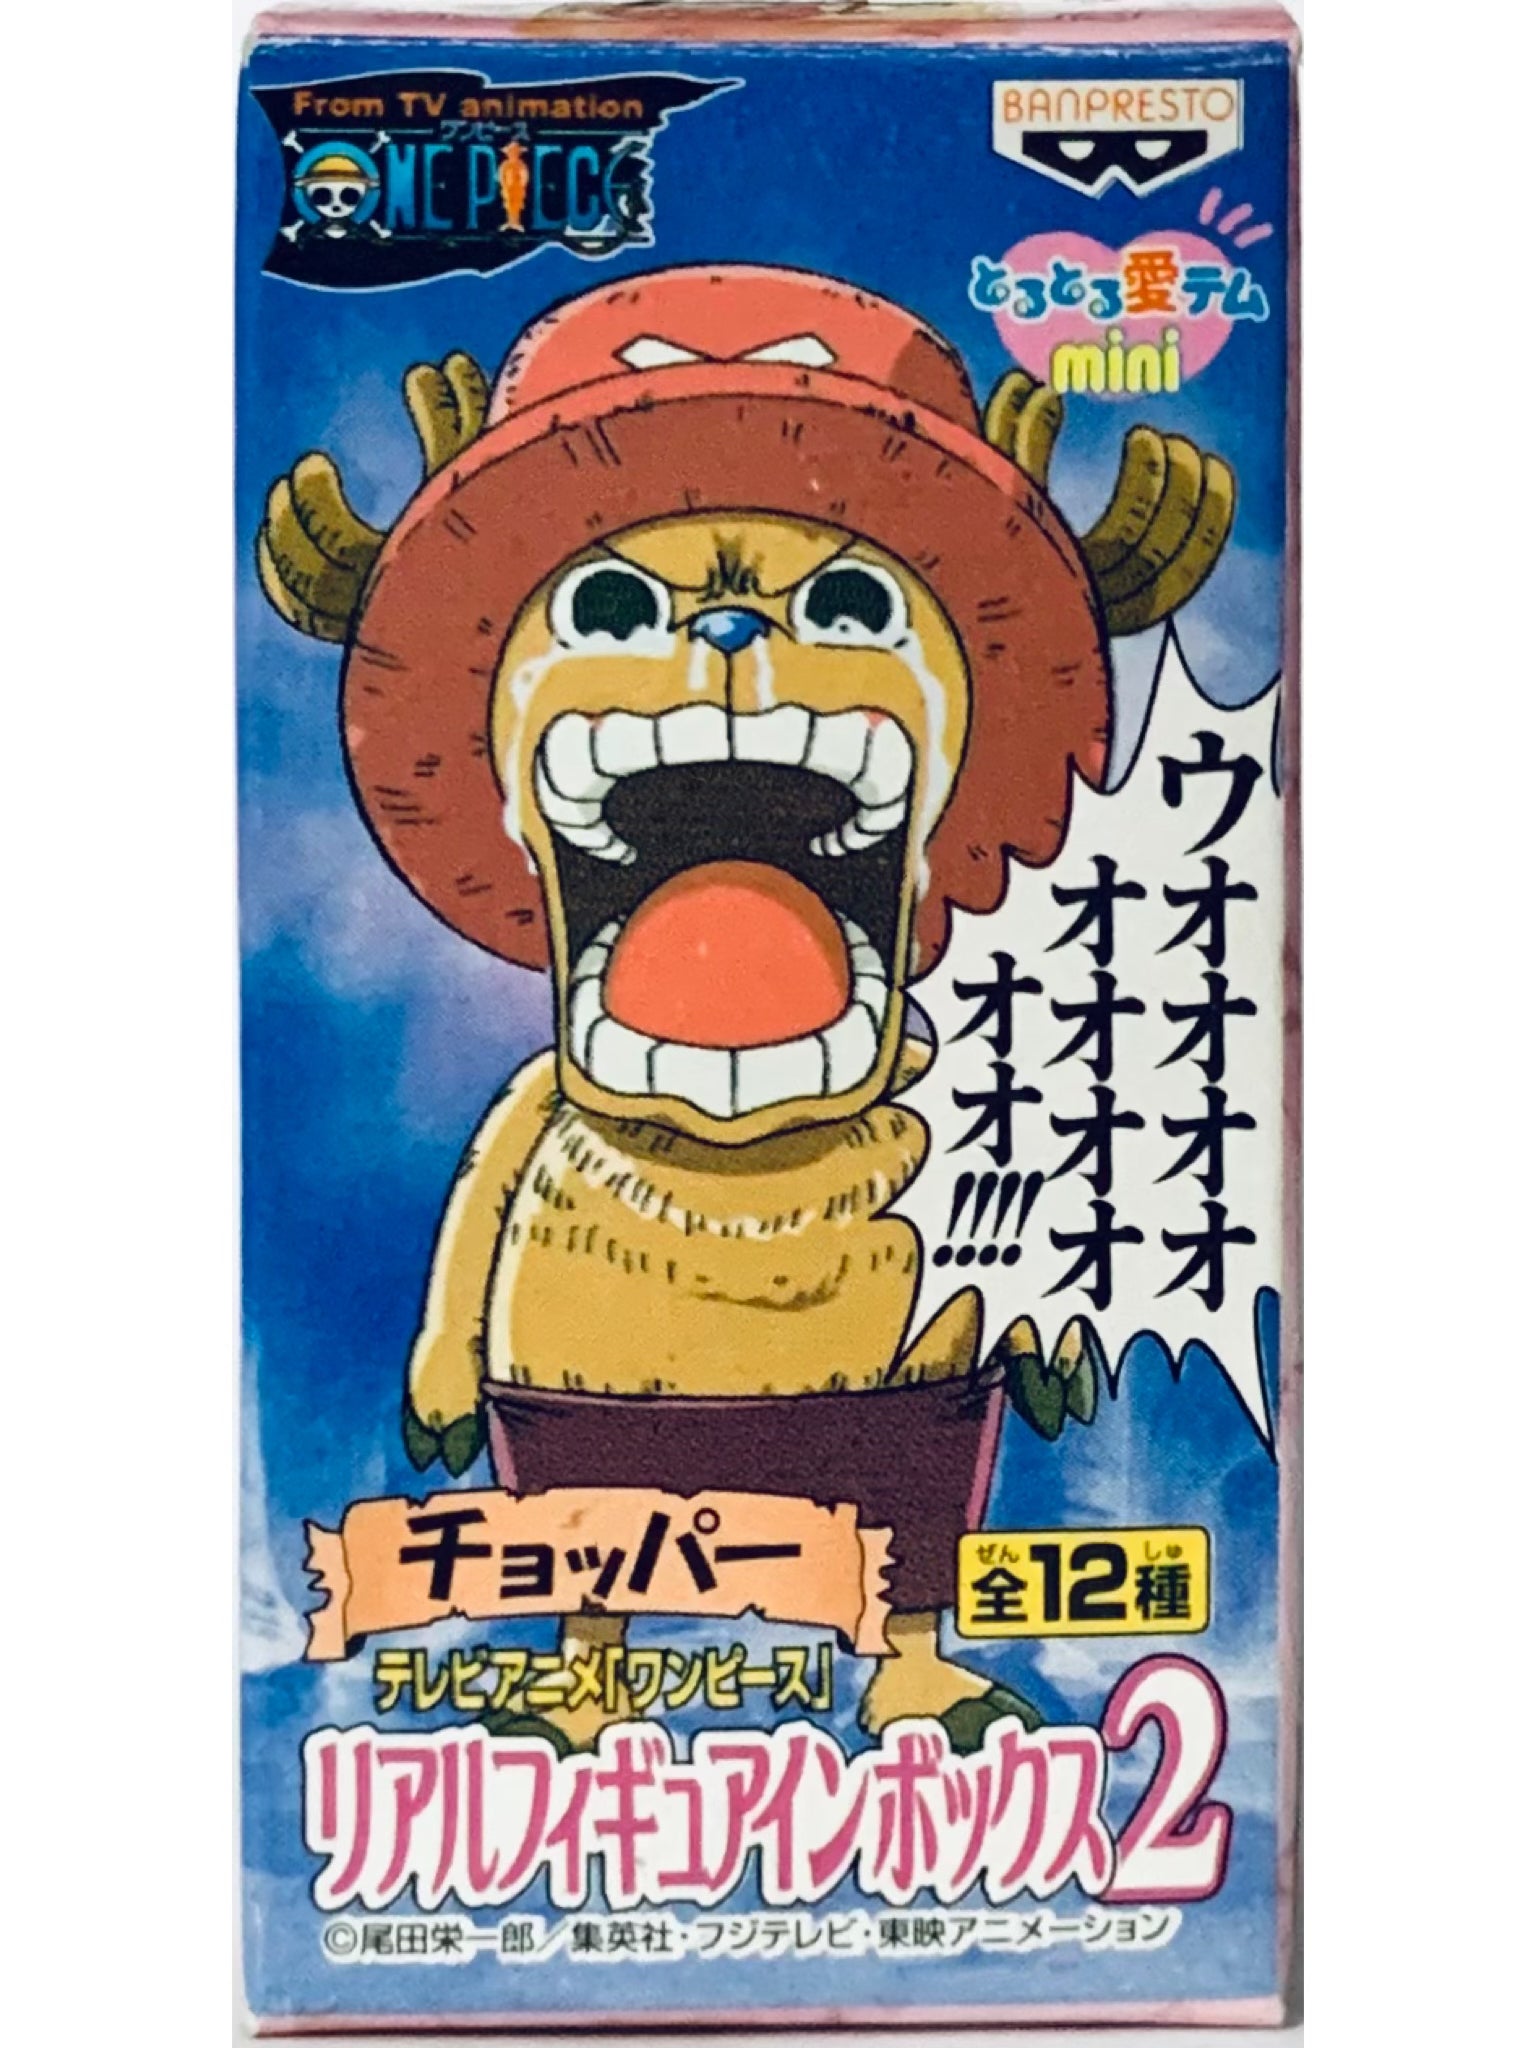 Tony Tony Chopper King of Artist One Piece Banpresto - Bandai